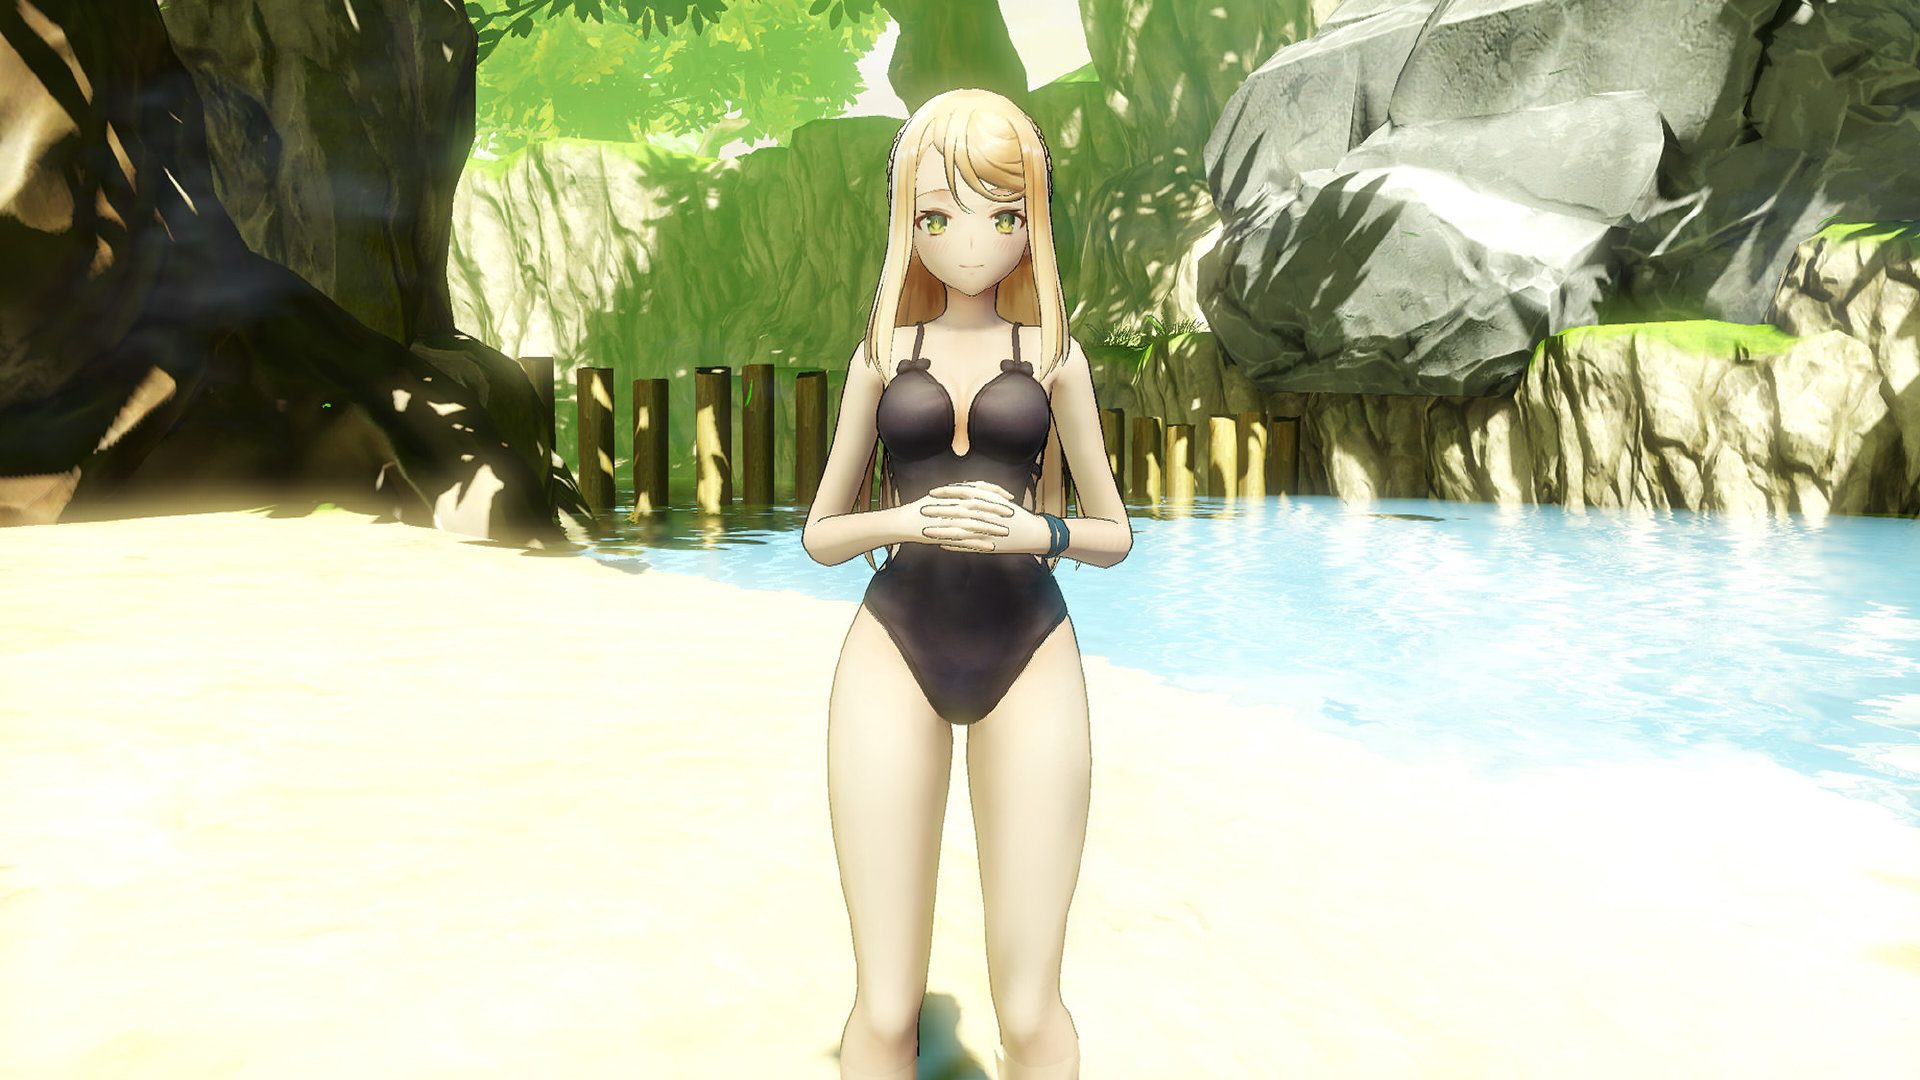 《萊莎的煉金工房2》免費DLC發布 泳裝萊莎3月來襲